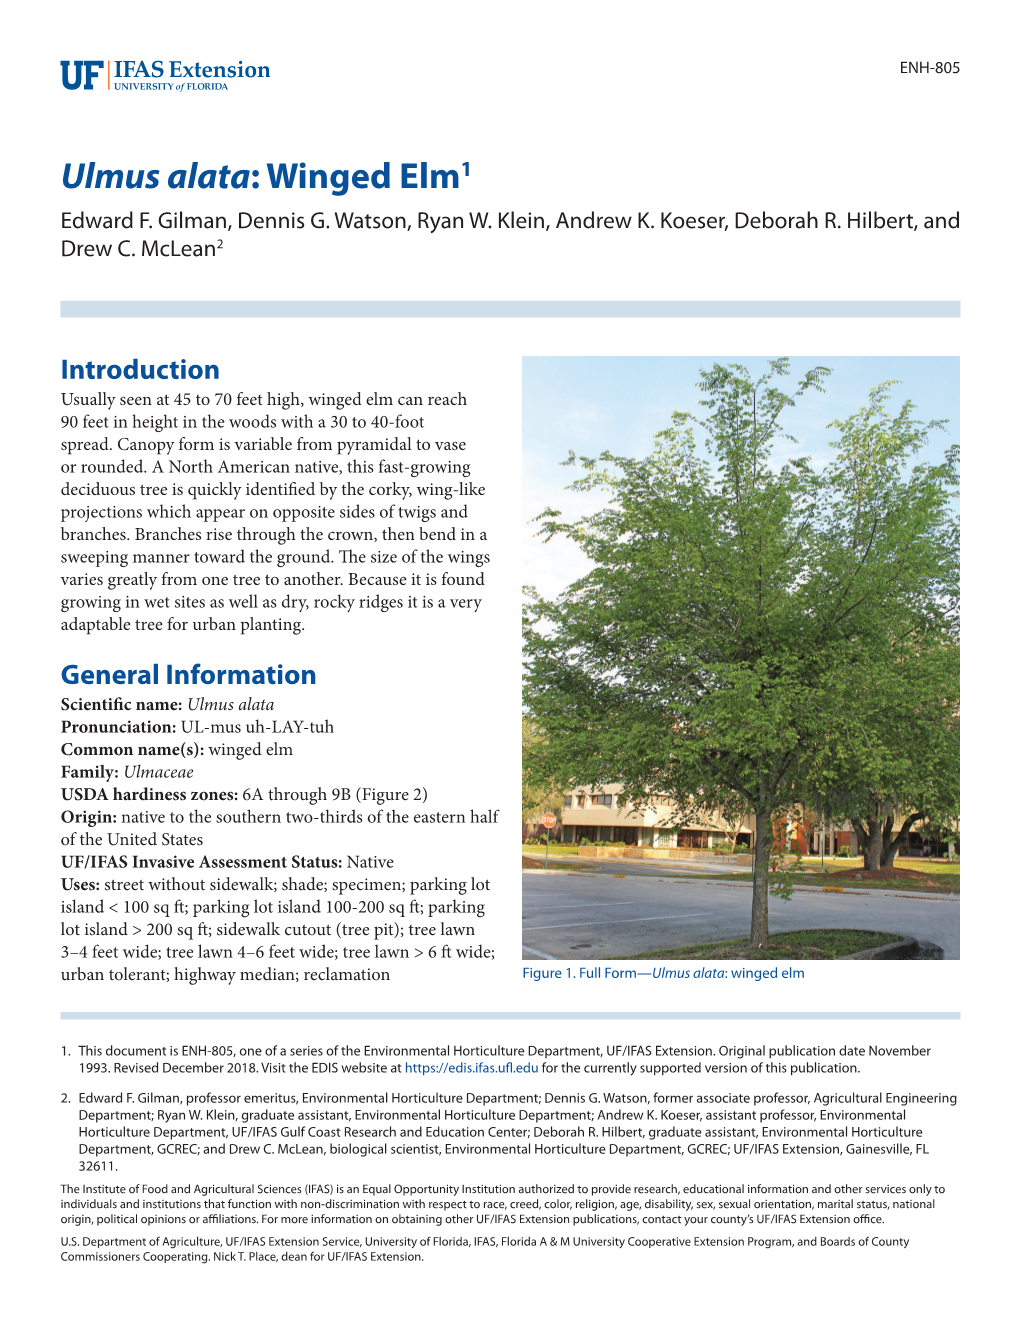 Ulmus Alata: Winged Elm1 Edward F